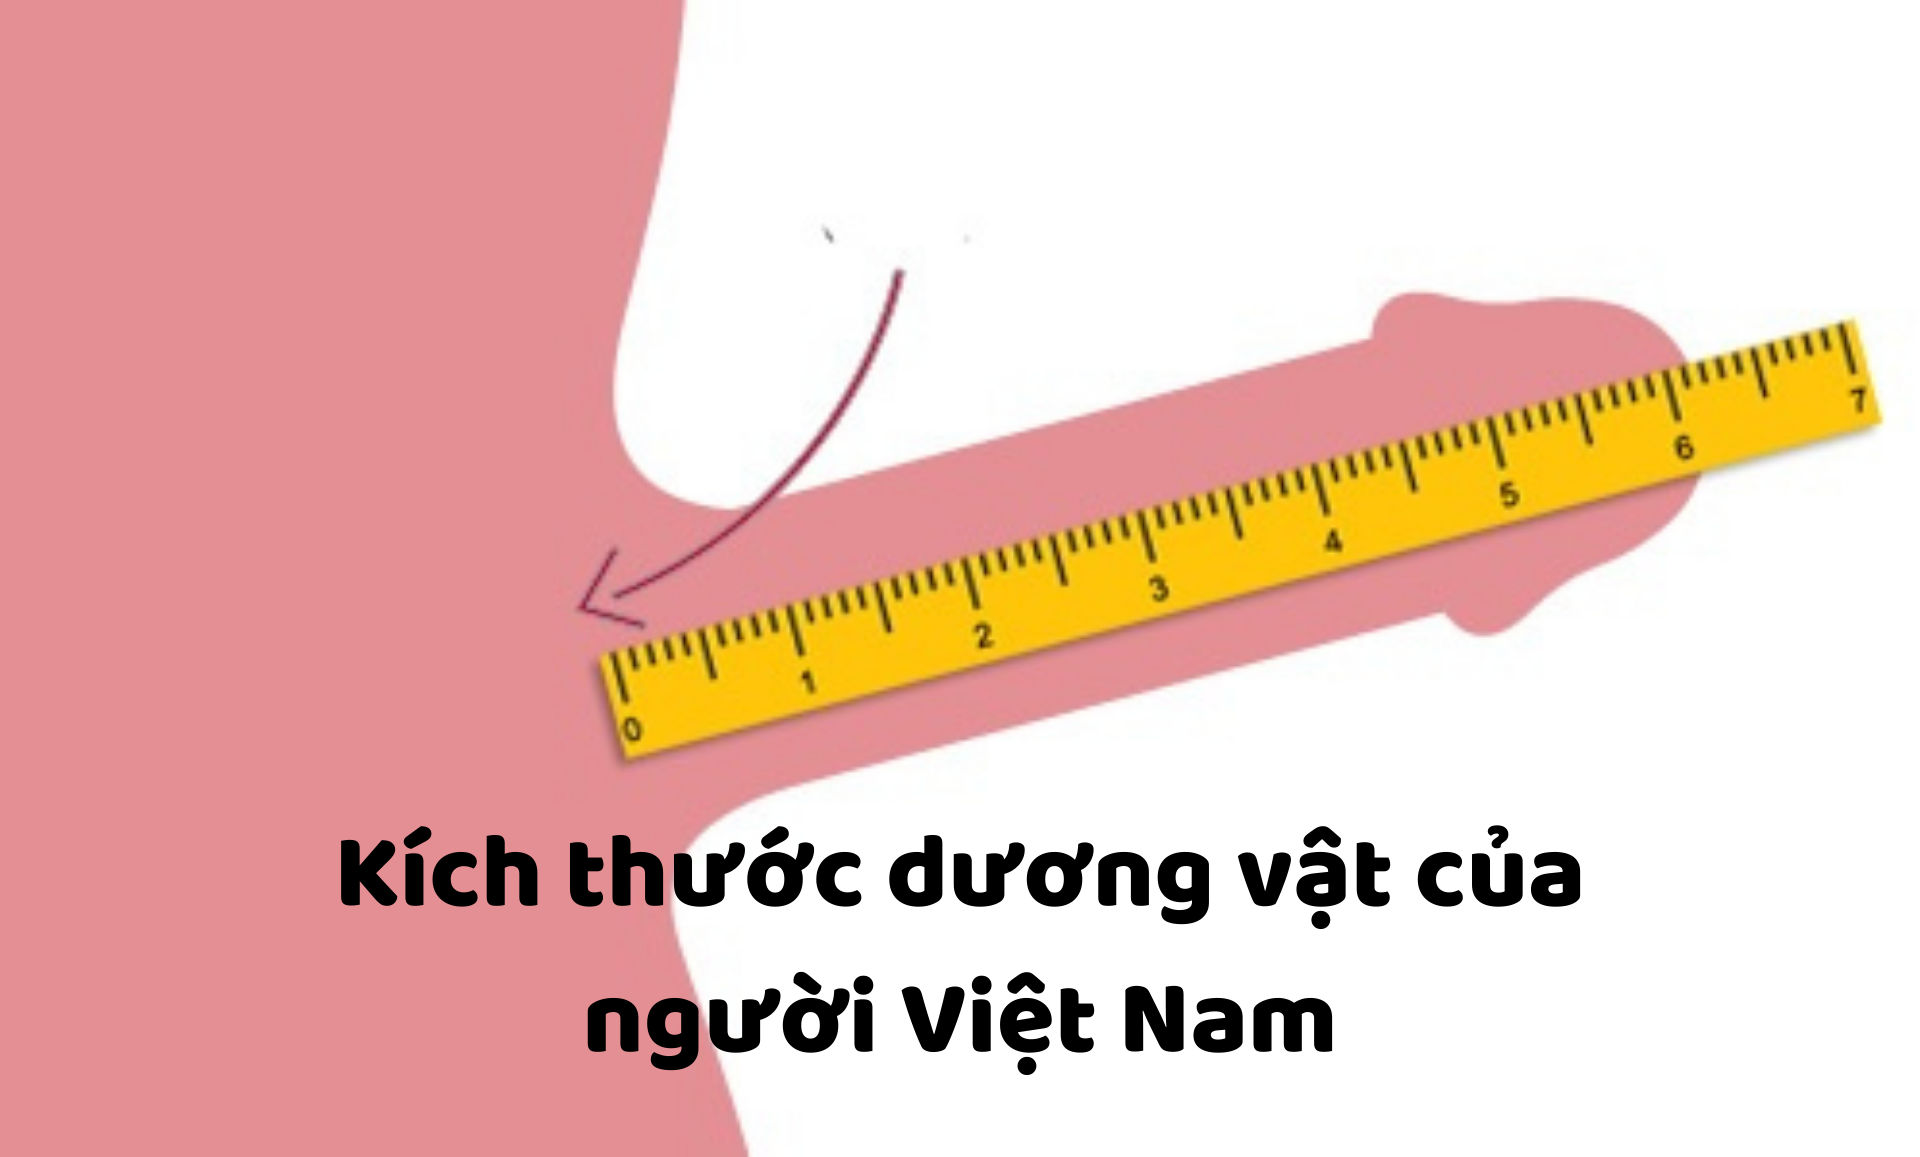 Trung bình kích thước dương vật người Việt Nam là bao nhiêu?